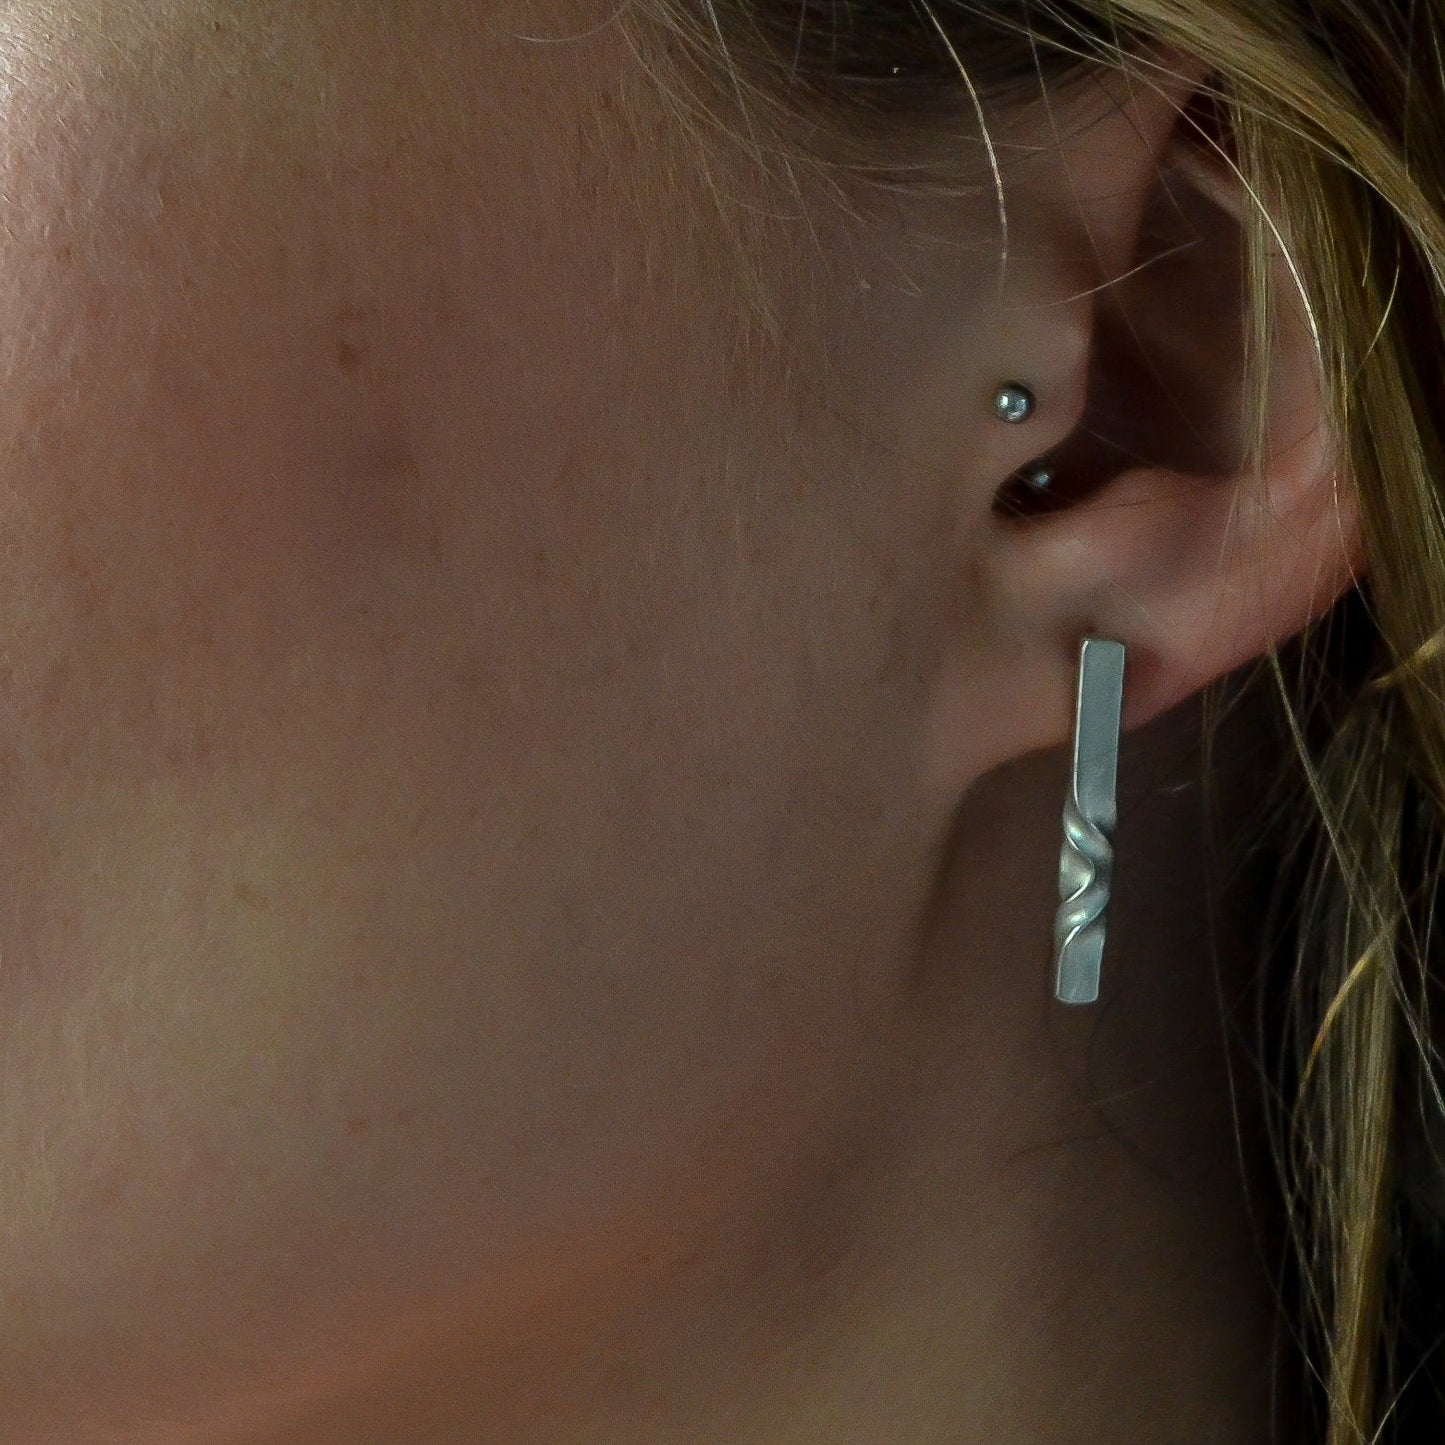 minimal sterling studs - geometric silver earrings - earrings for wife - architectural jewelry -modern earrings - everyday earrings